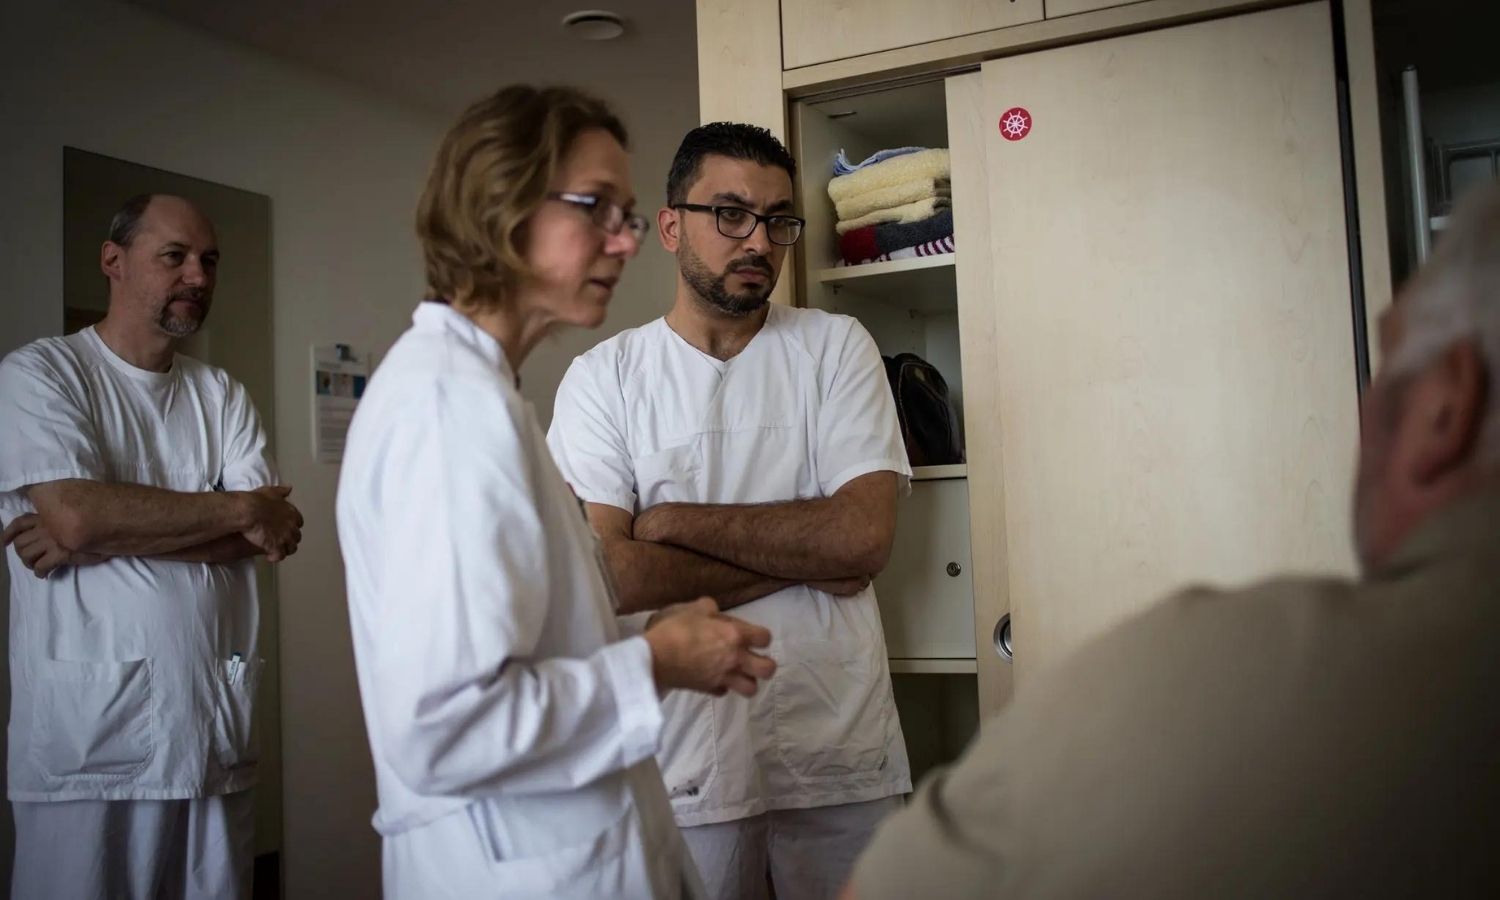 الطبيب أيهم إبراهيم يرافق أحد الأطباء خلال جولاته في عيادة الساحل الغربي في هايد ألمانيا - 8 من أيلول 2018 (نيويورك تايمز)